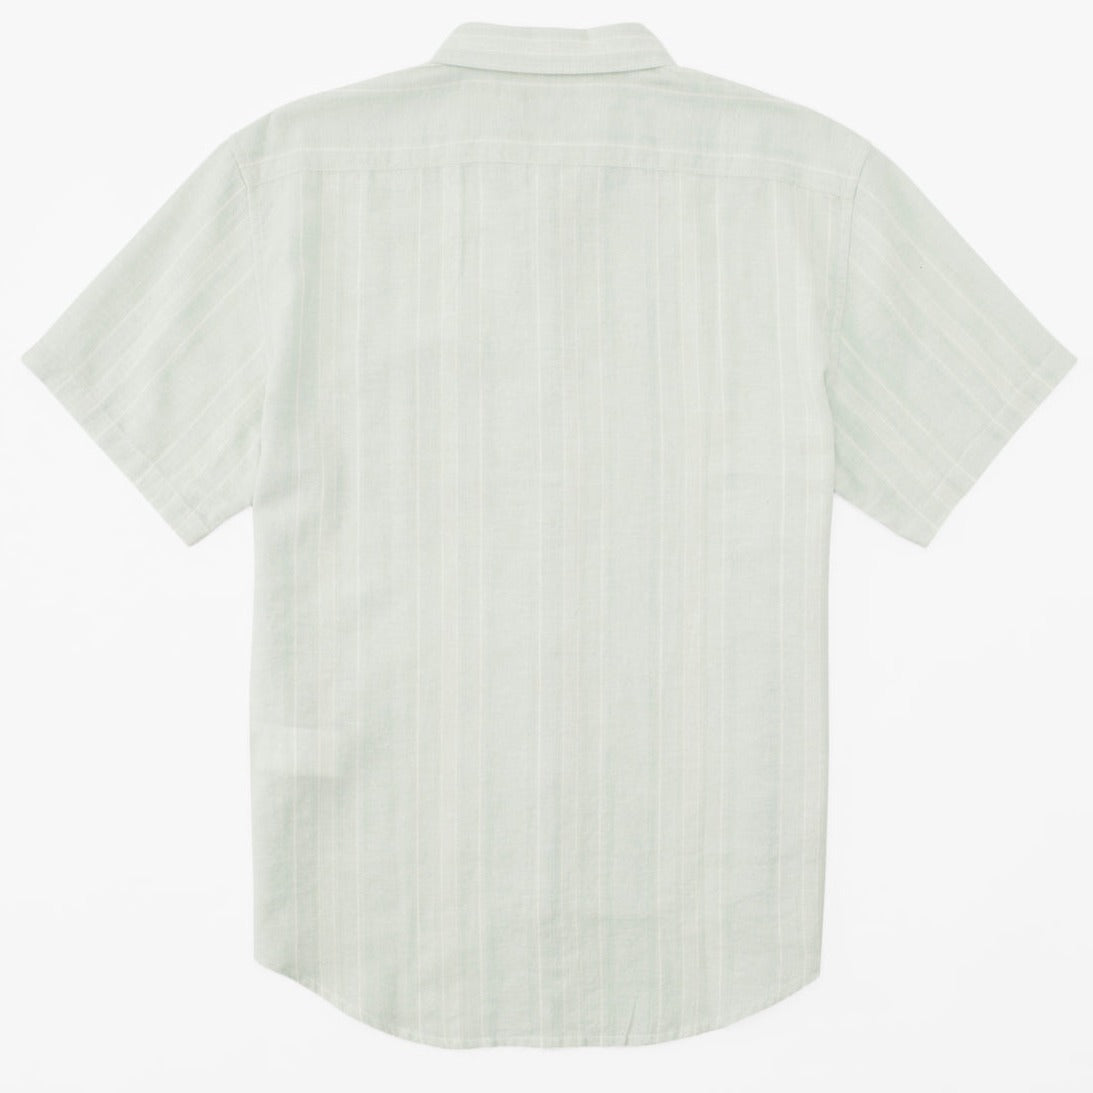 Woven Shirt - Billabong Daily Hemp Shirt